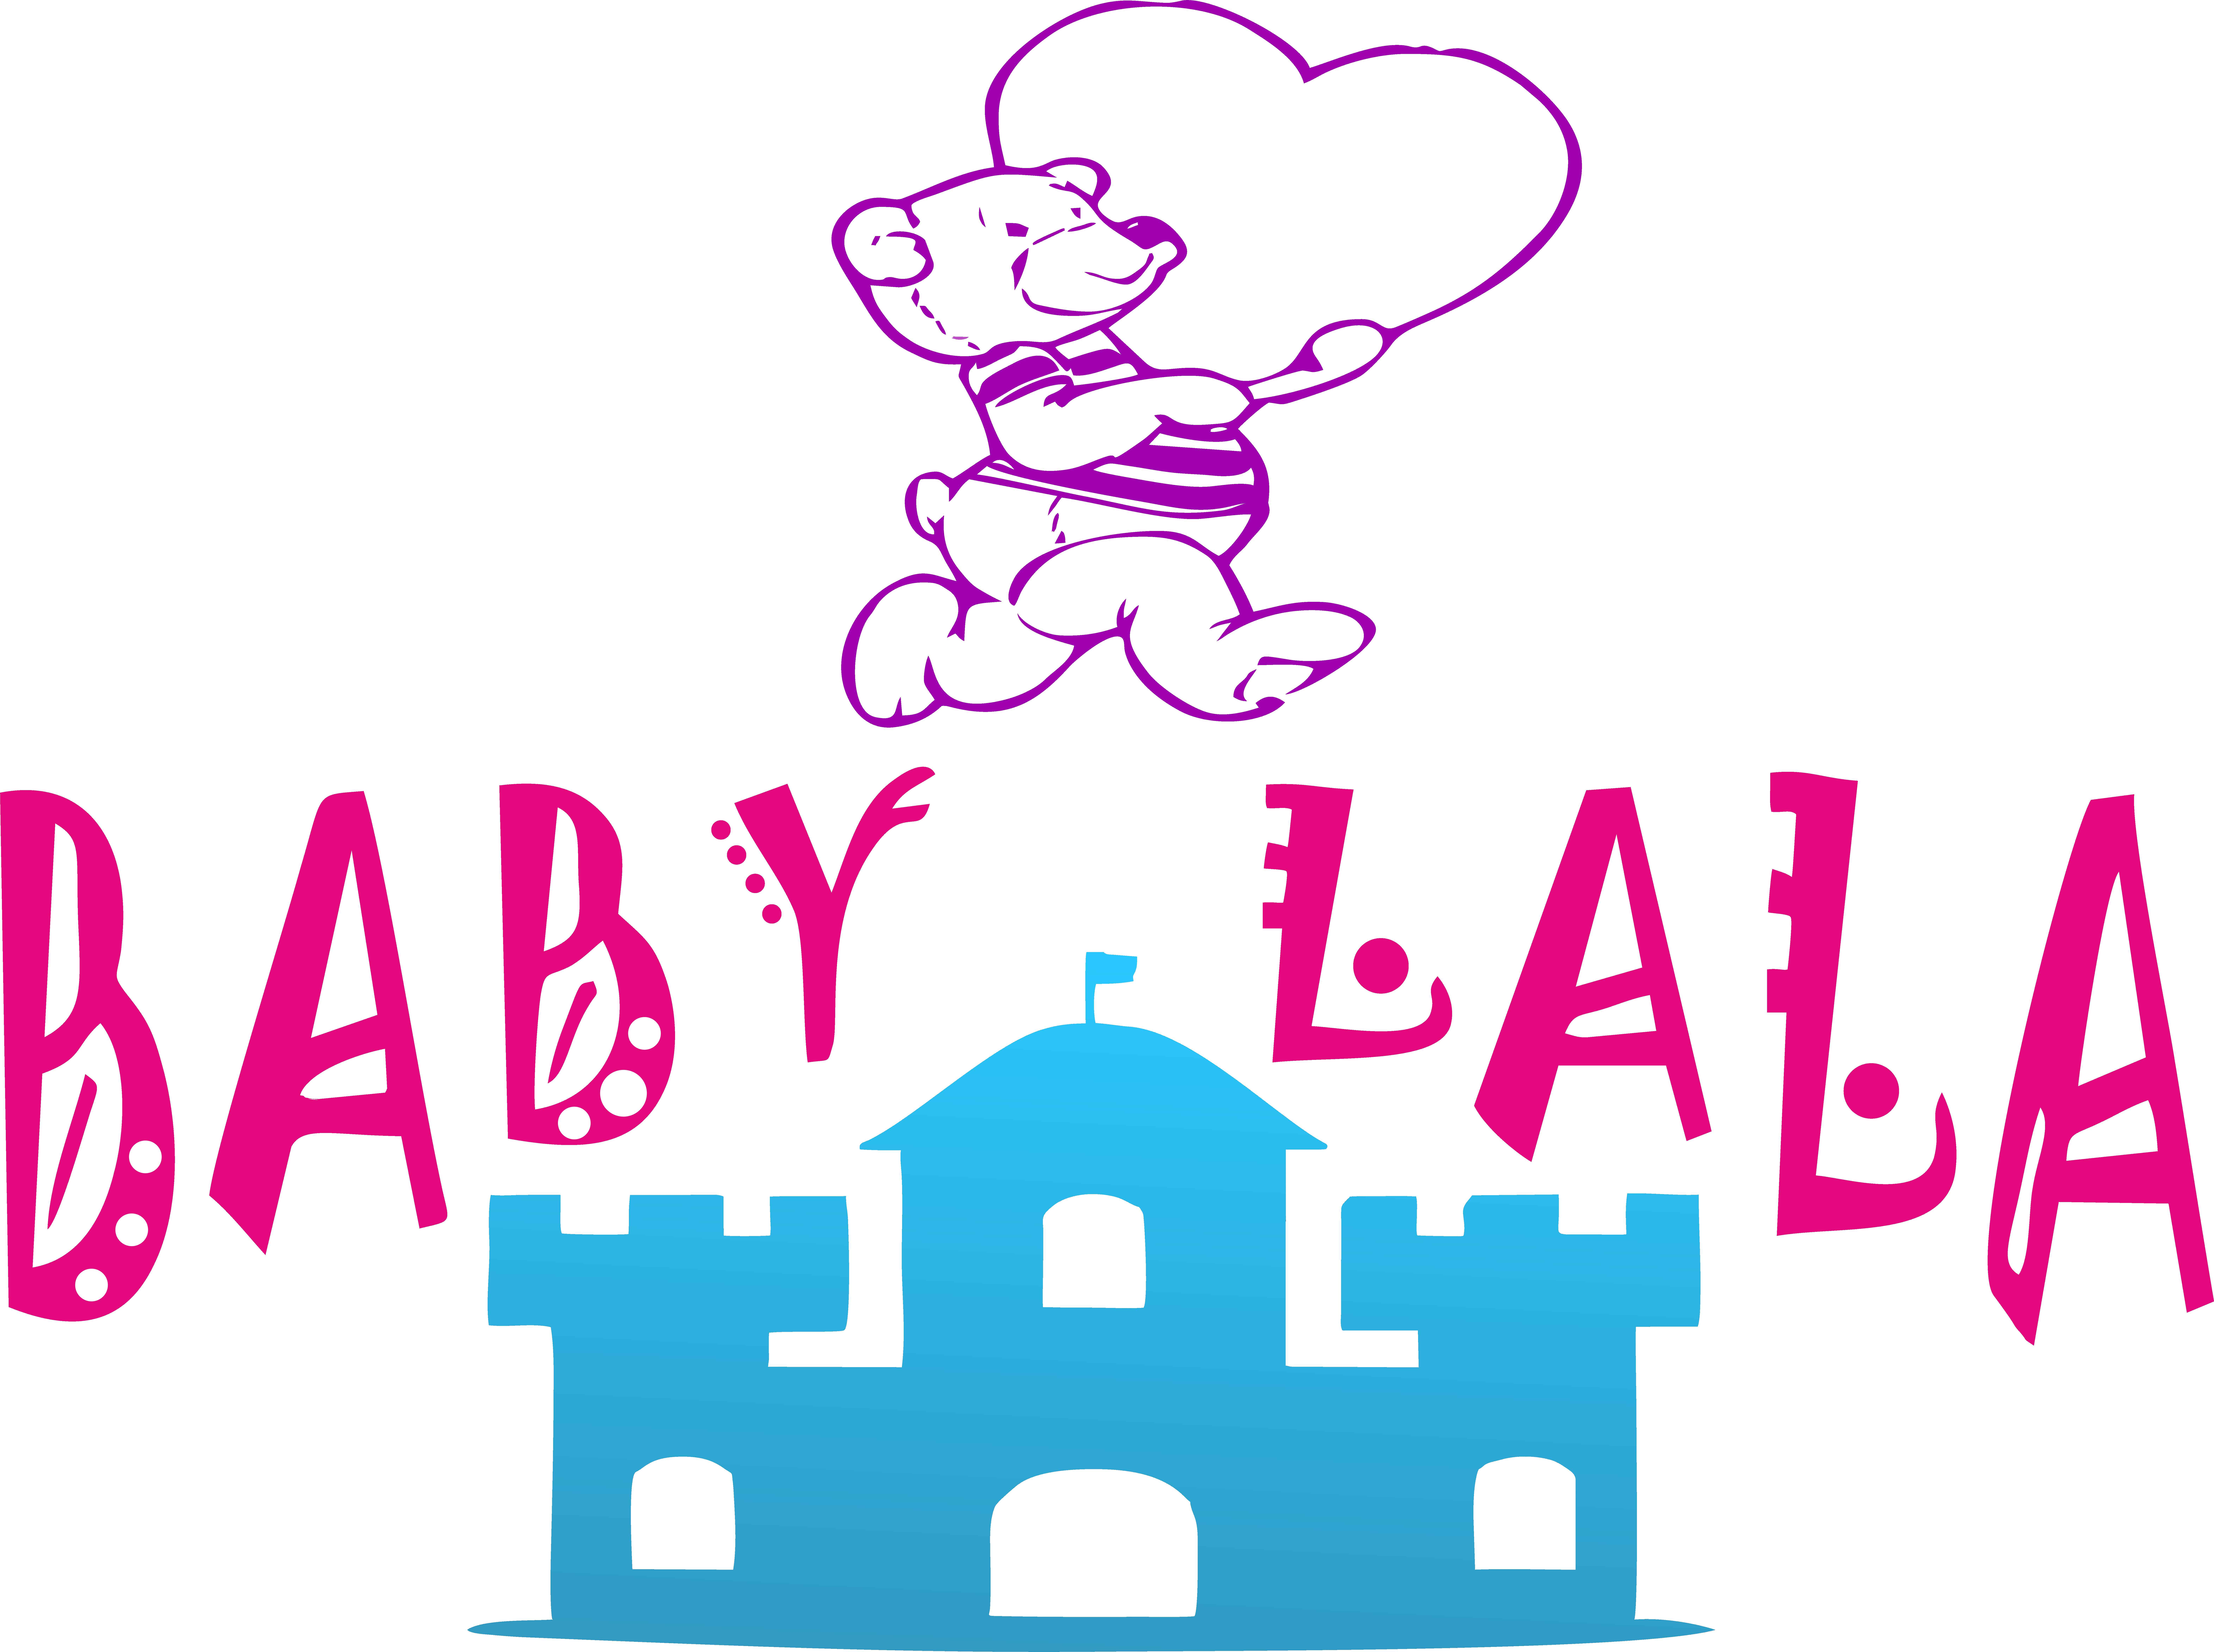 (c) Baby-lala.at